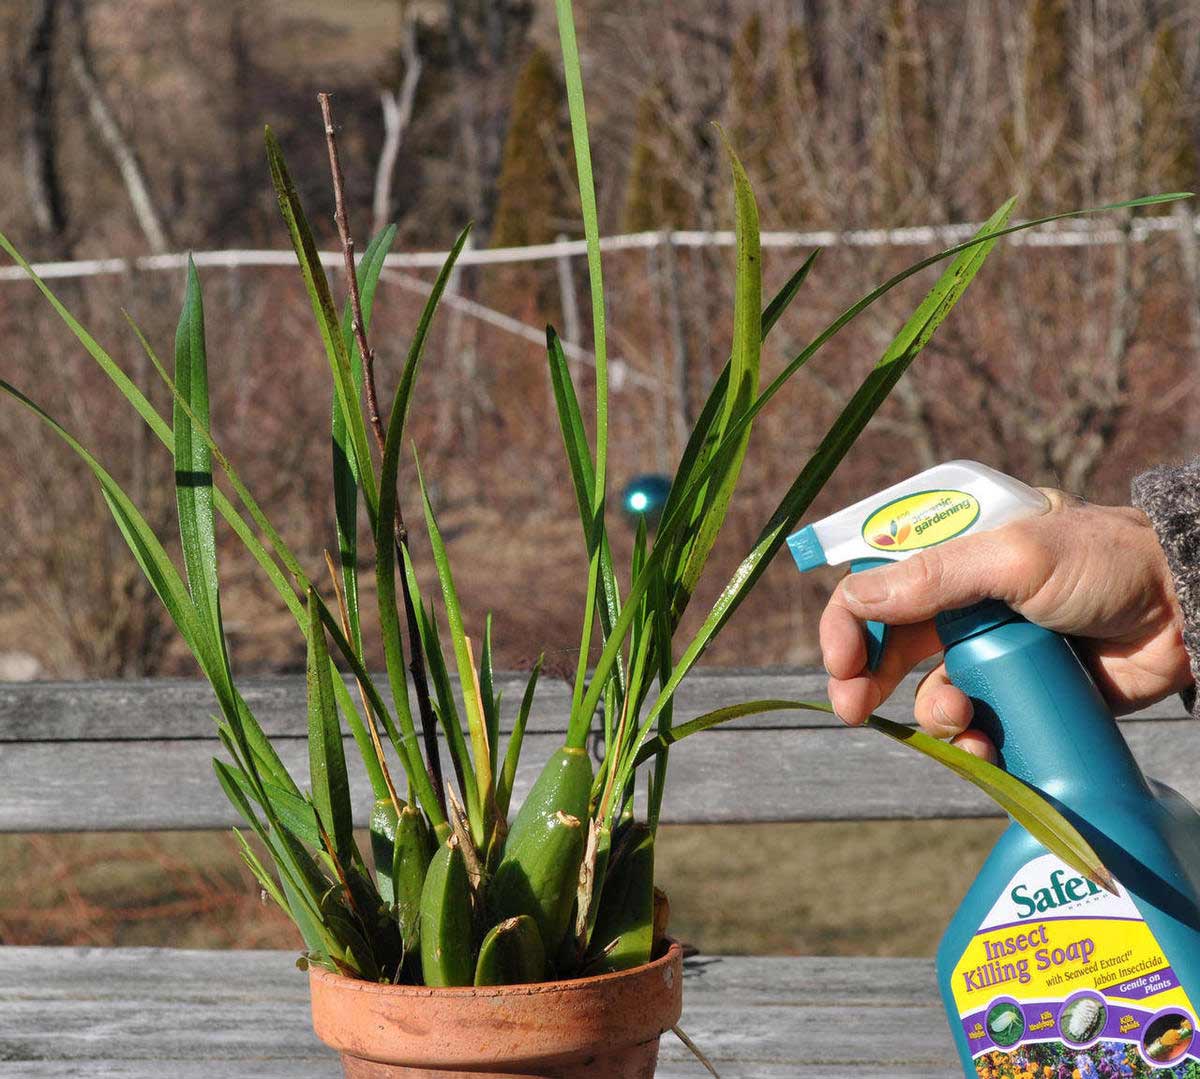 حین تمیز کردن گیاهان باید مراقب باشید تا به آنها آسیبی نرسد و همینطور در تابش مستقیم آفتاب گیاه را خیس نکنید چون قطره آب مانند ذره بین عمل کرده و گیاه را زیر گرمای خورسید میسوزاند.